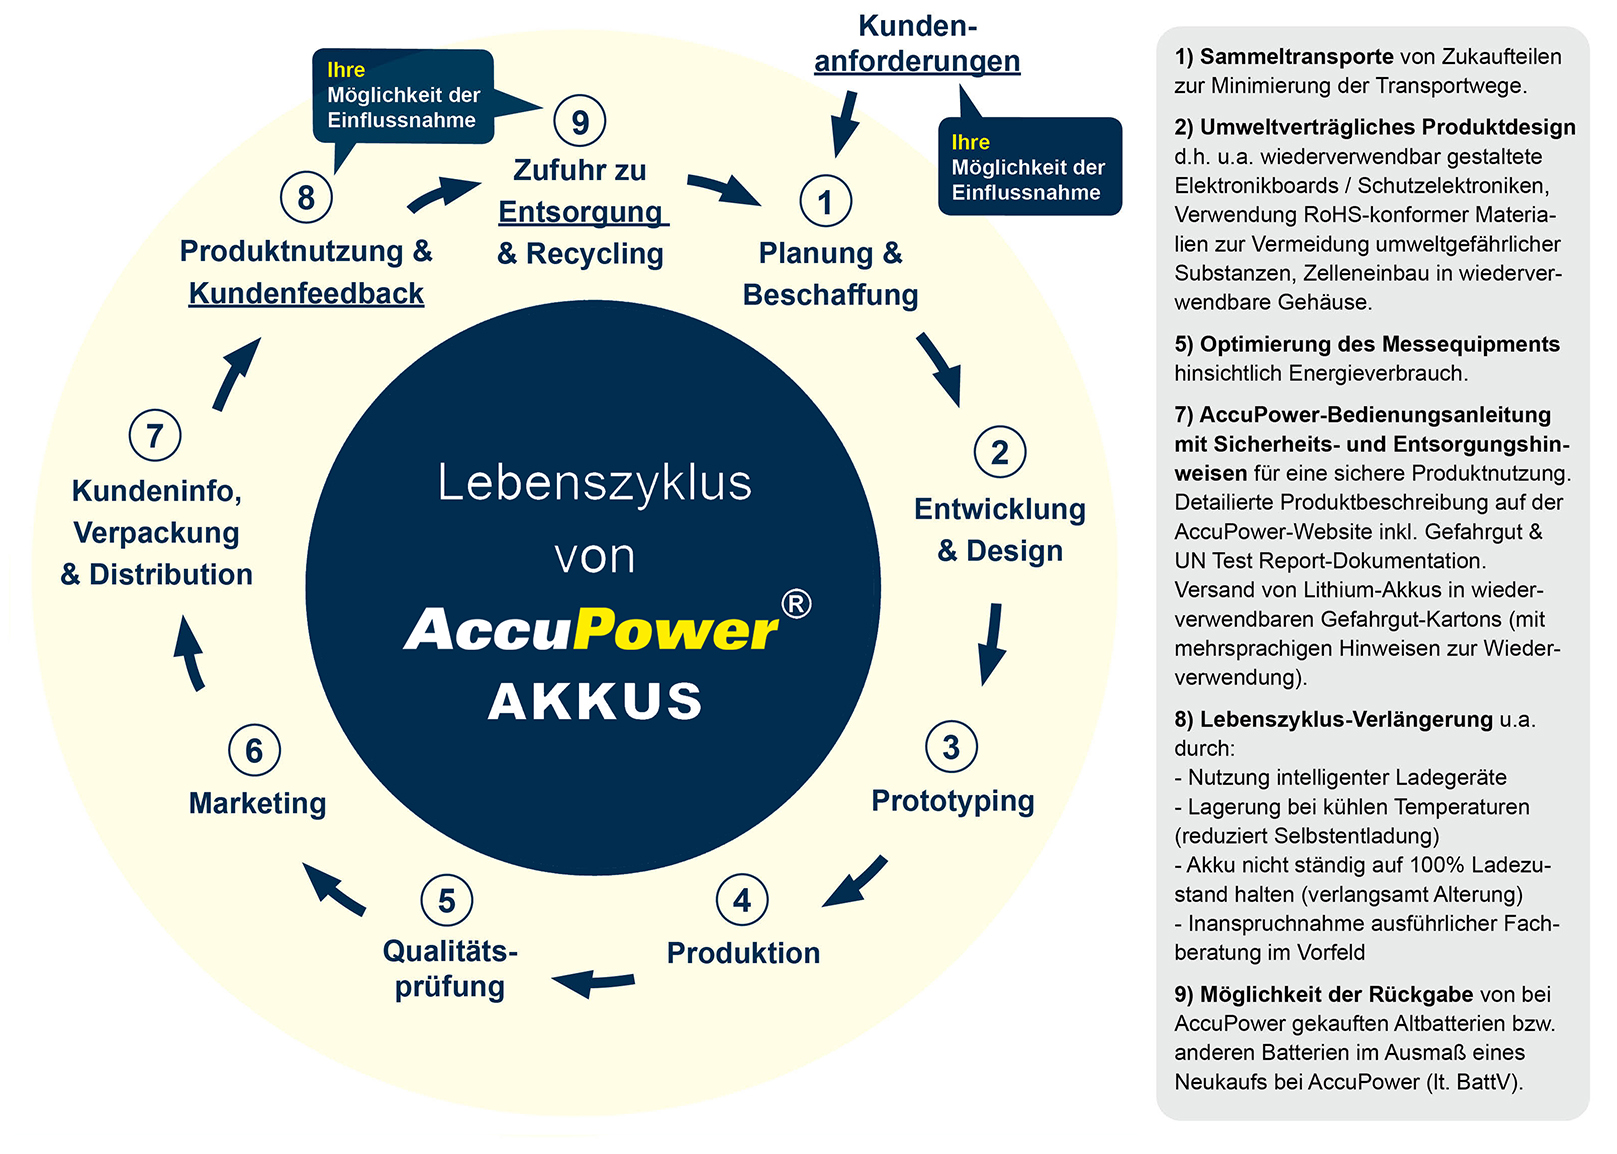 Lebenszyklus von AccuPower Akkus